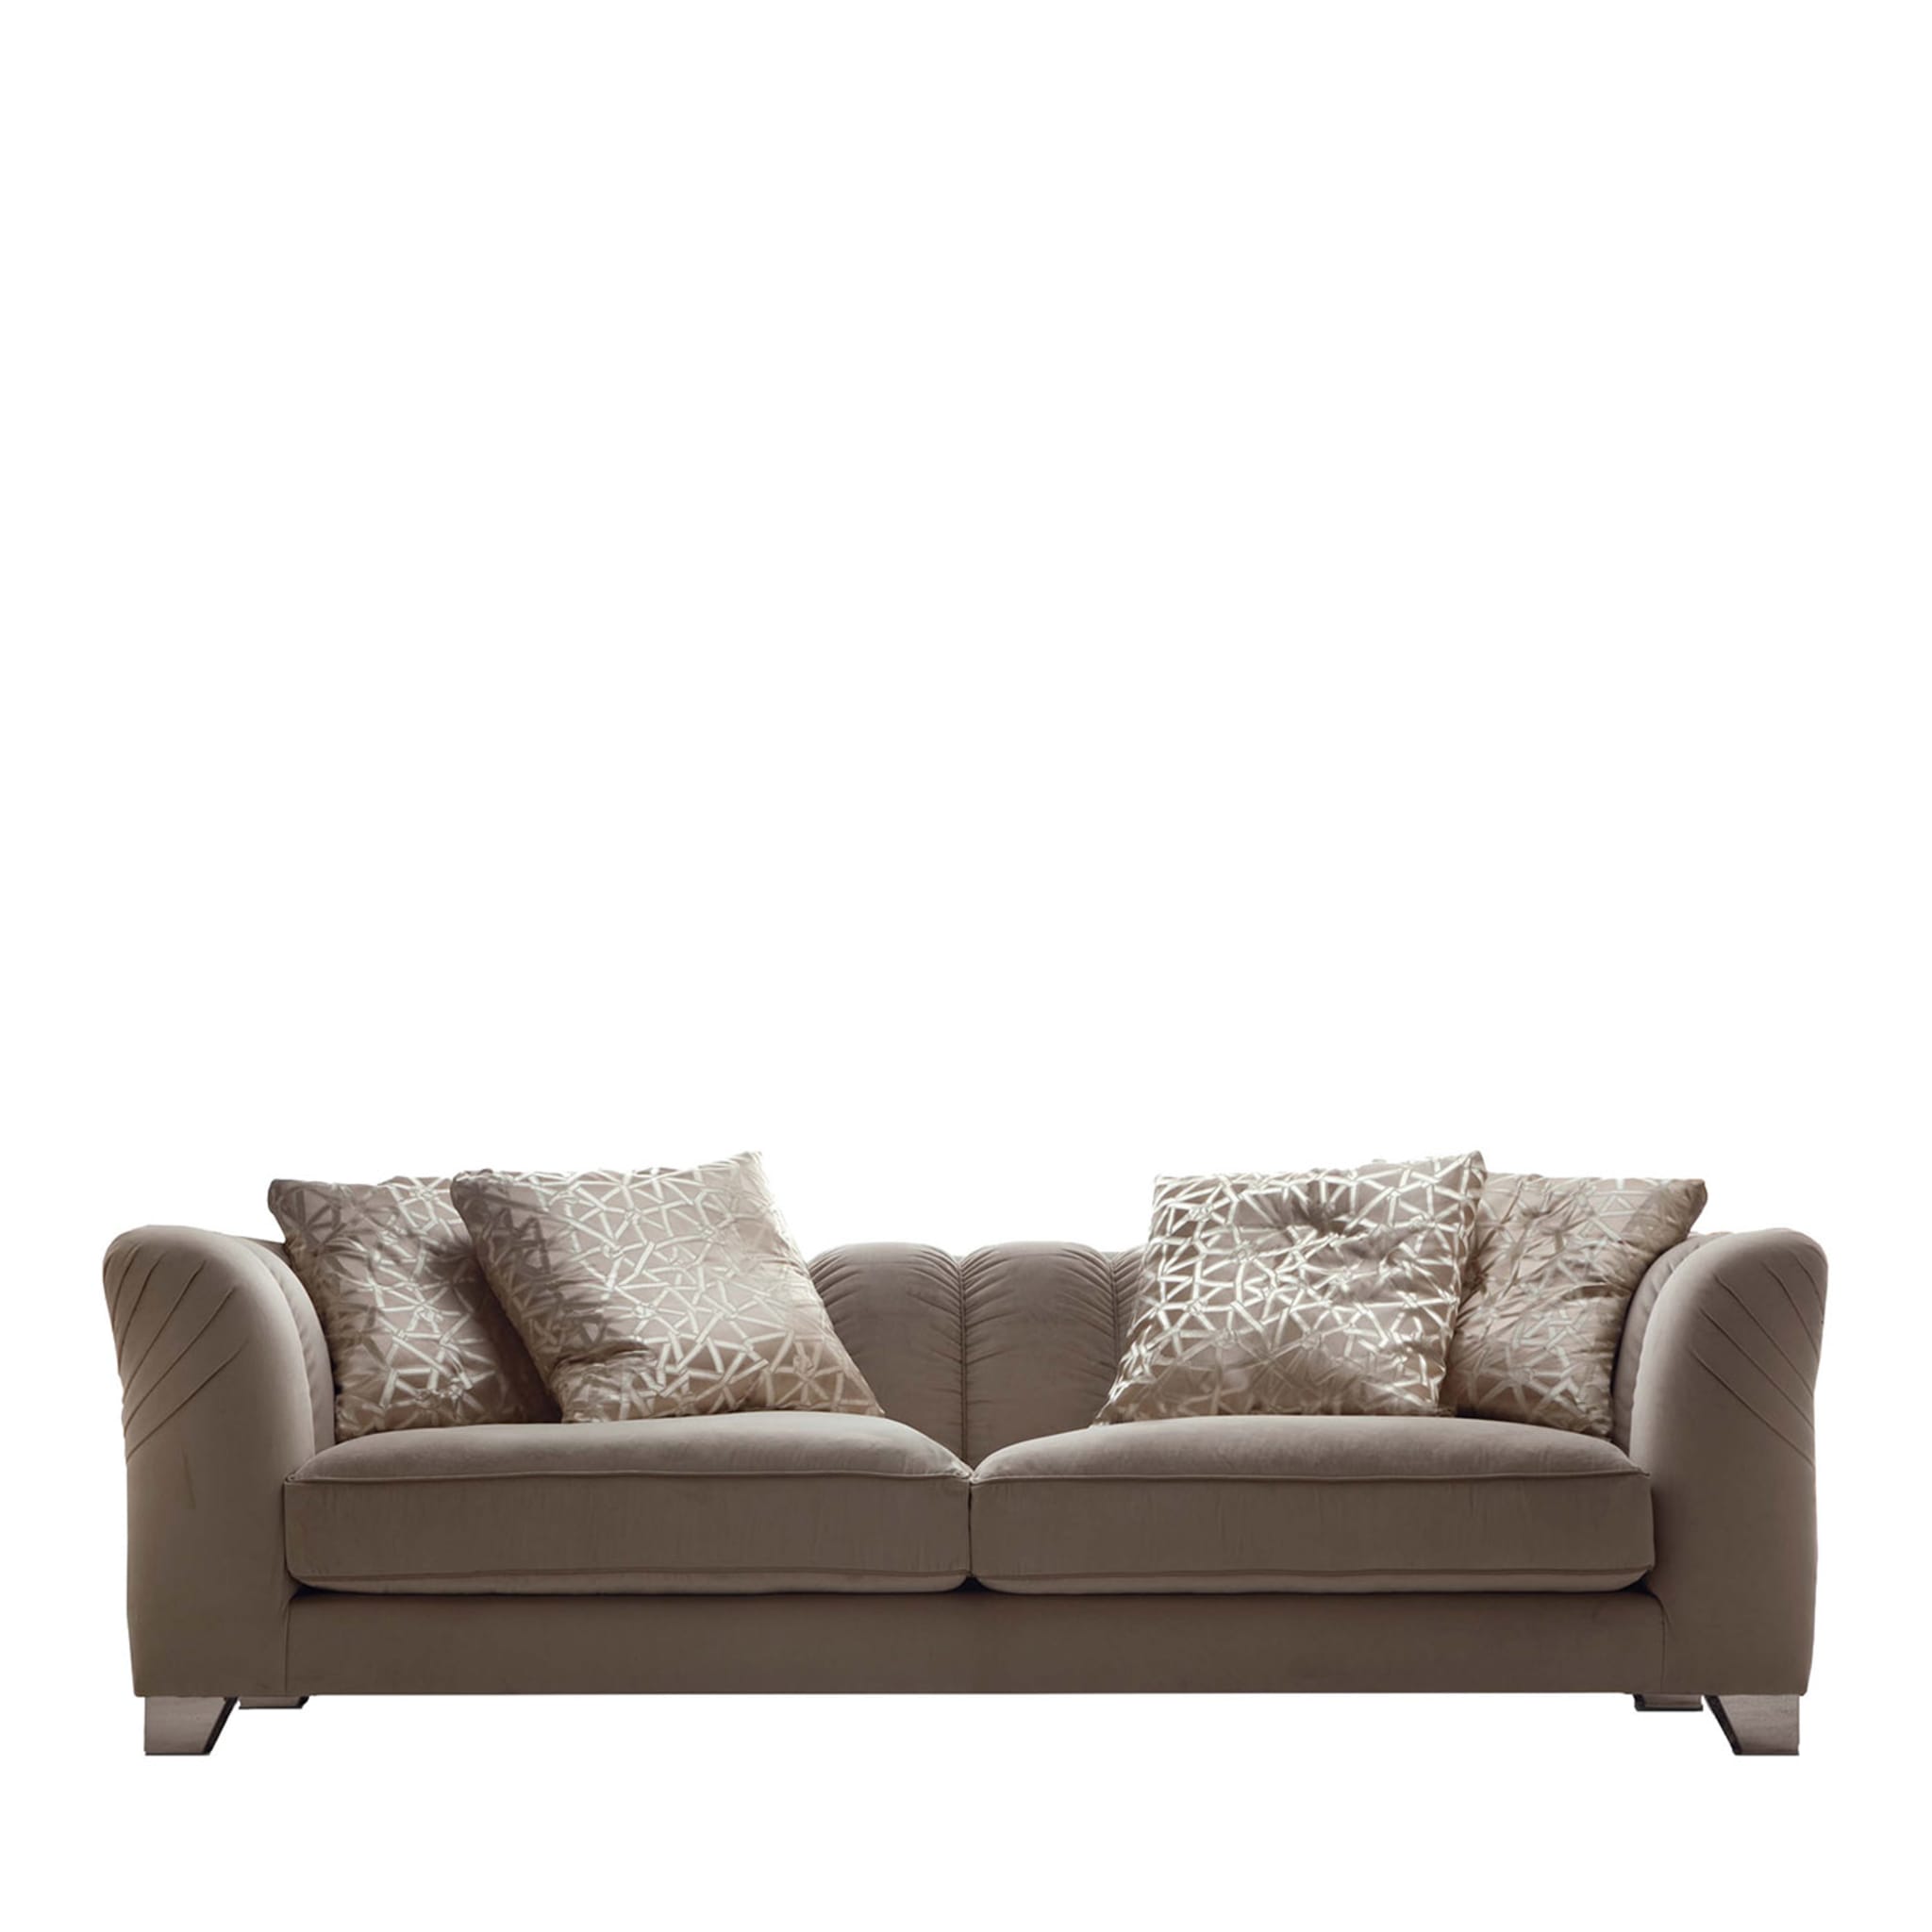 3-Sitziges Sofa aus Stoff in Beige - Hauptansicht